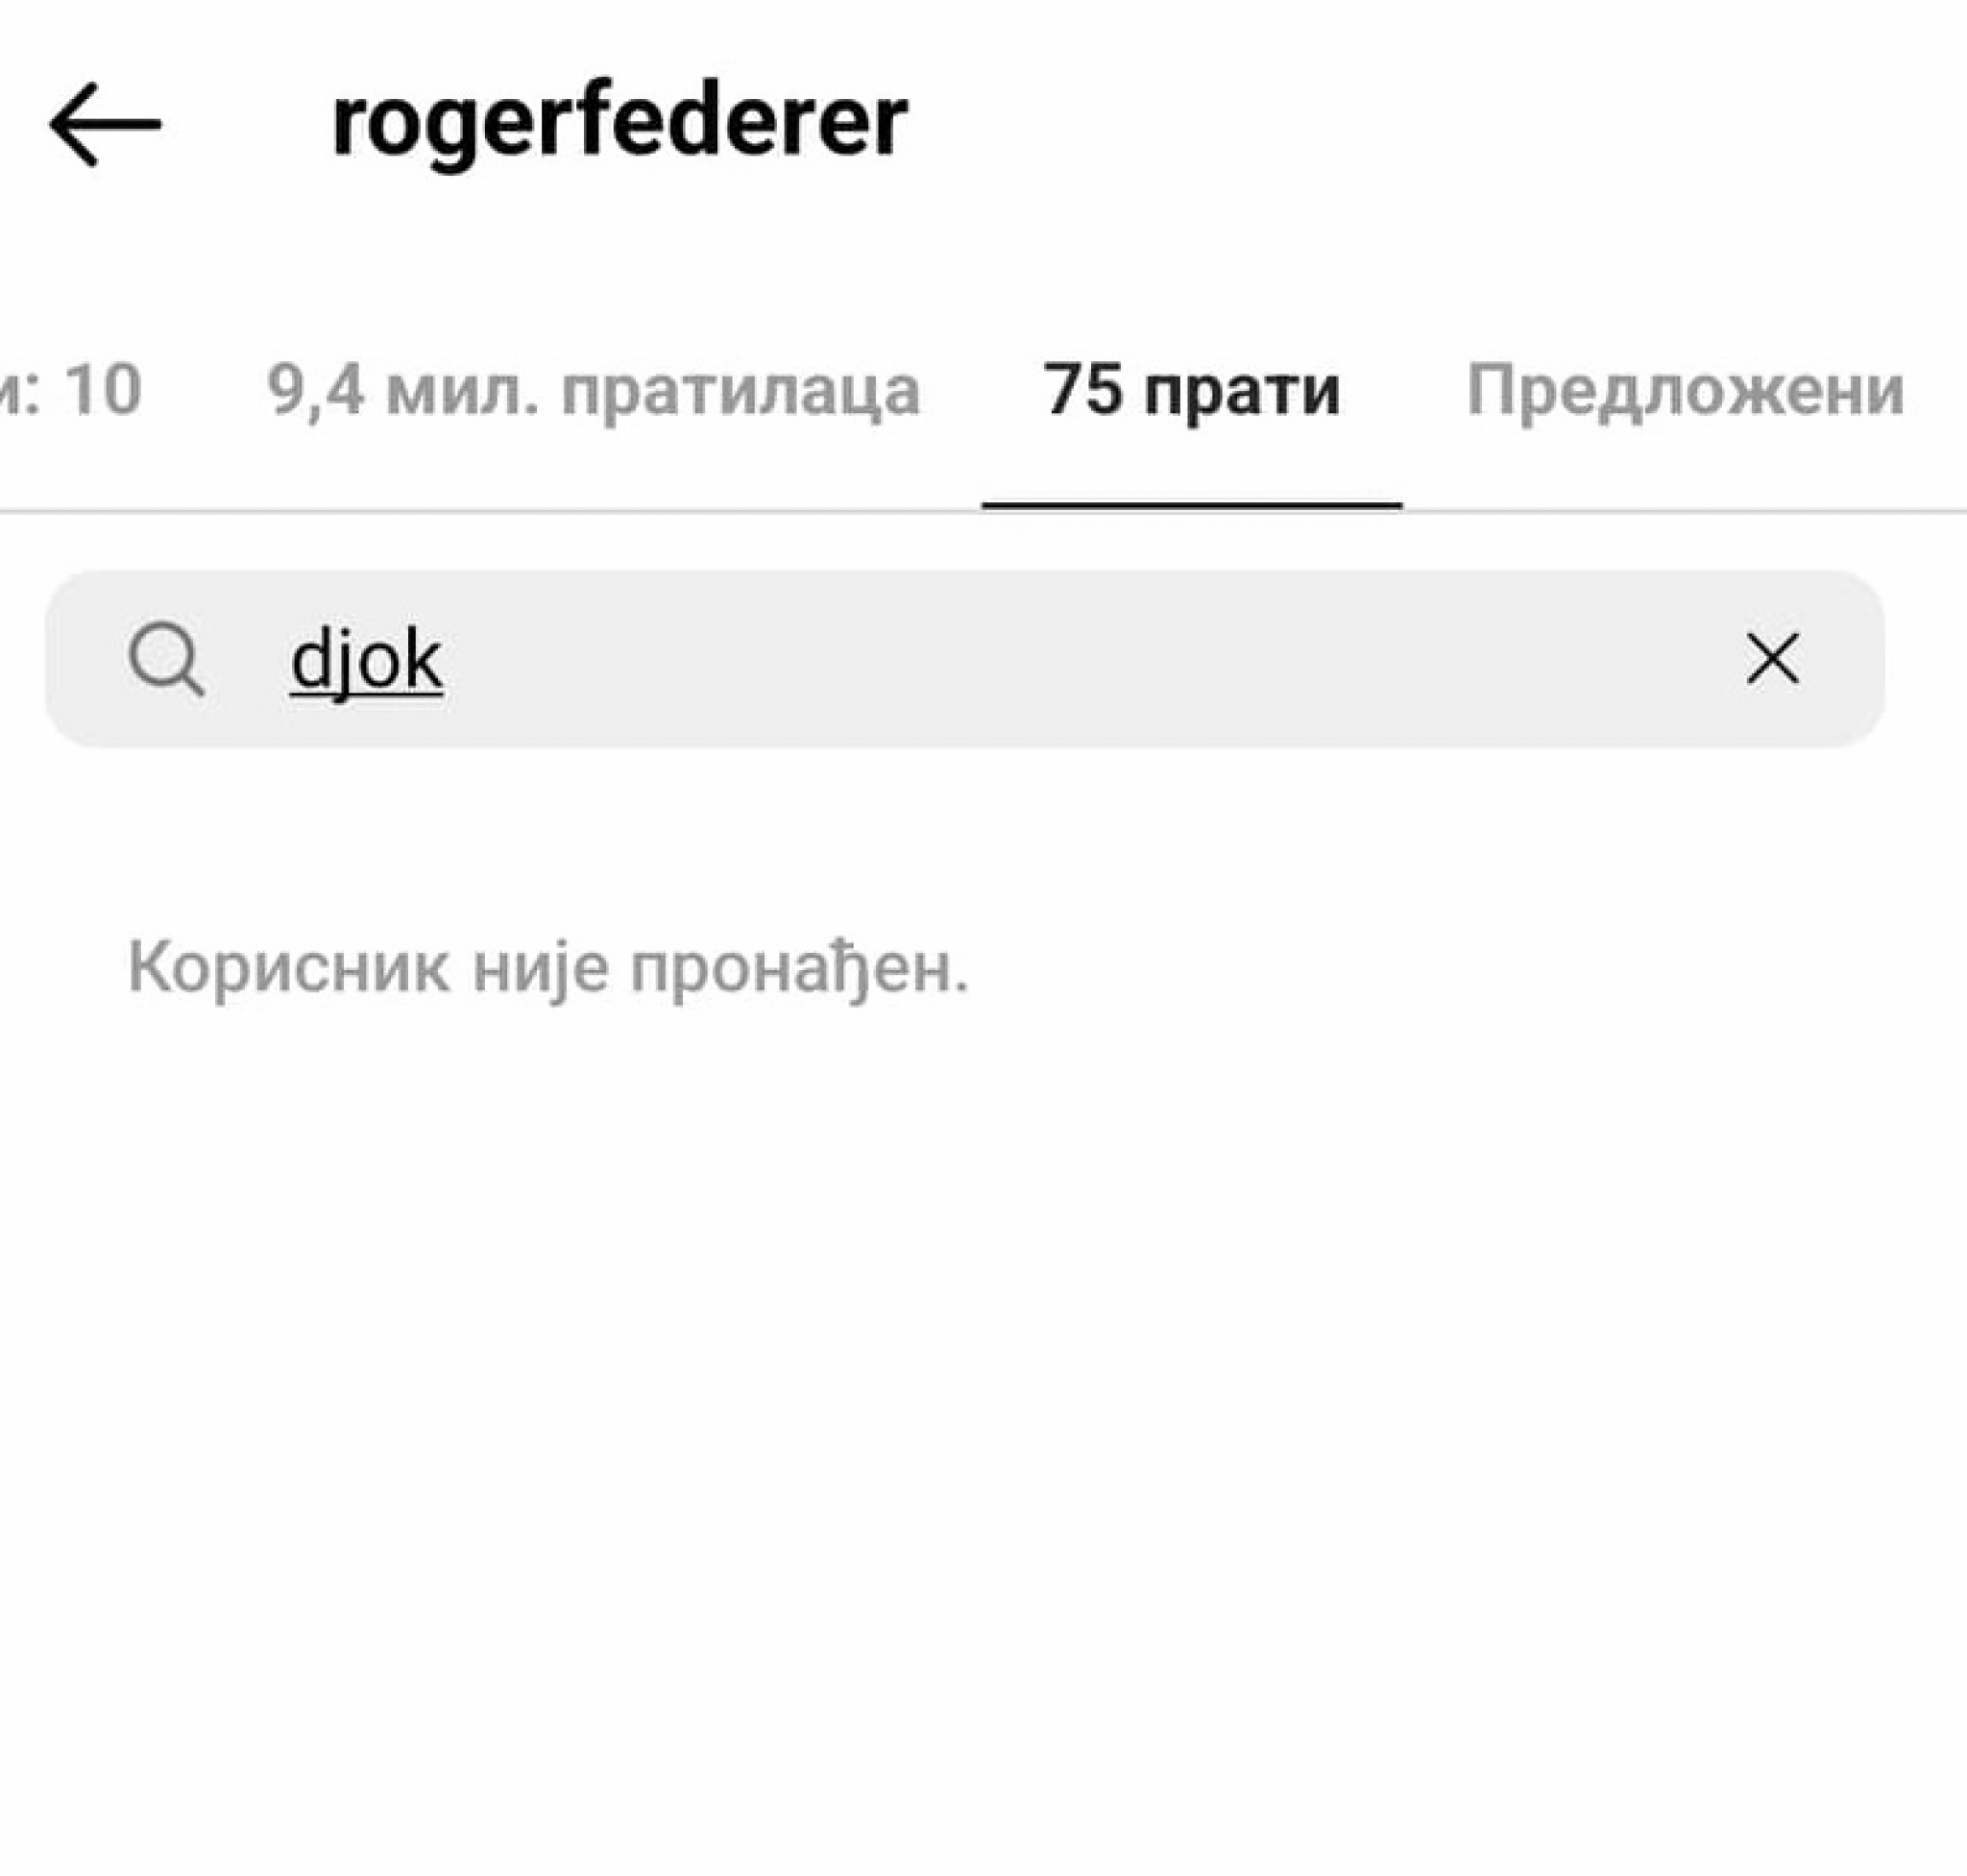 RODŽERE, IMAŠ LI OBRAZA? Federer pokazao koliko mrzi Đokovića, dokaz je konačno isplivao (FOTO)